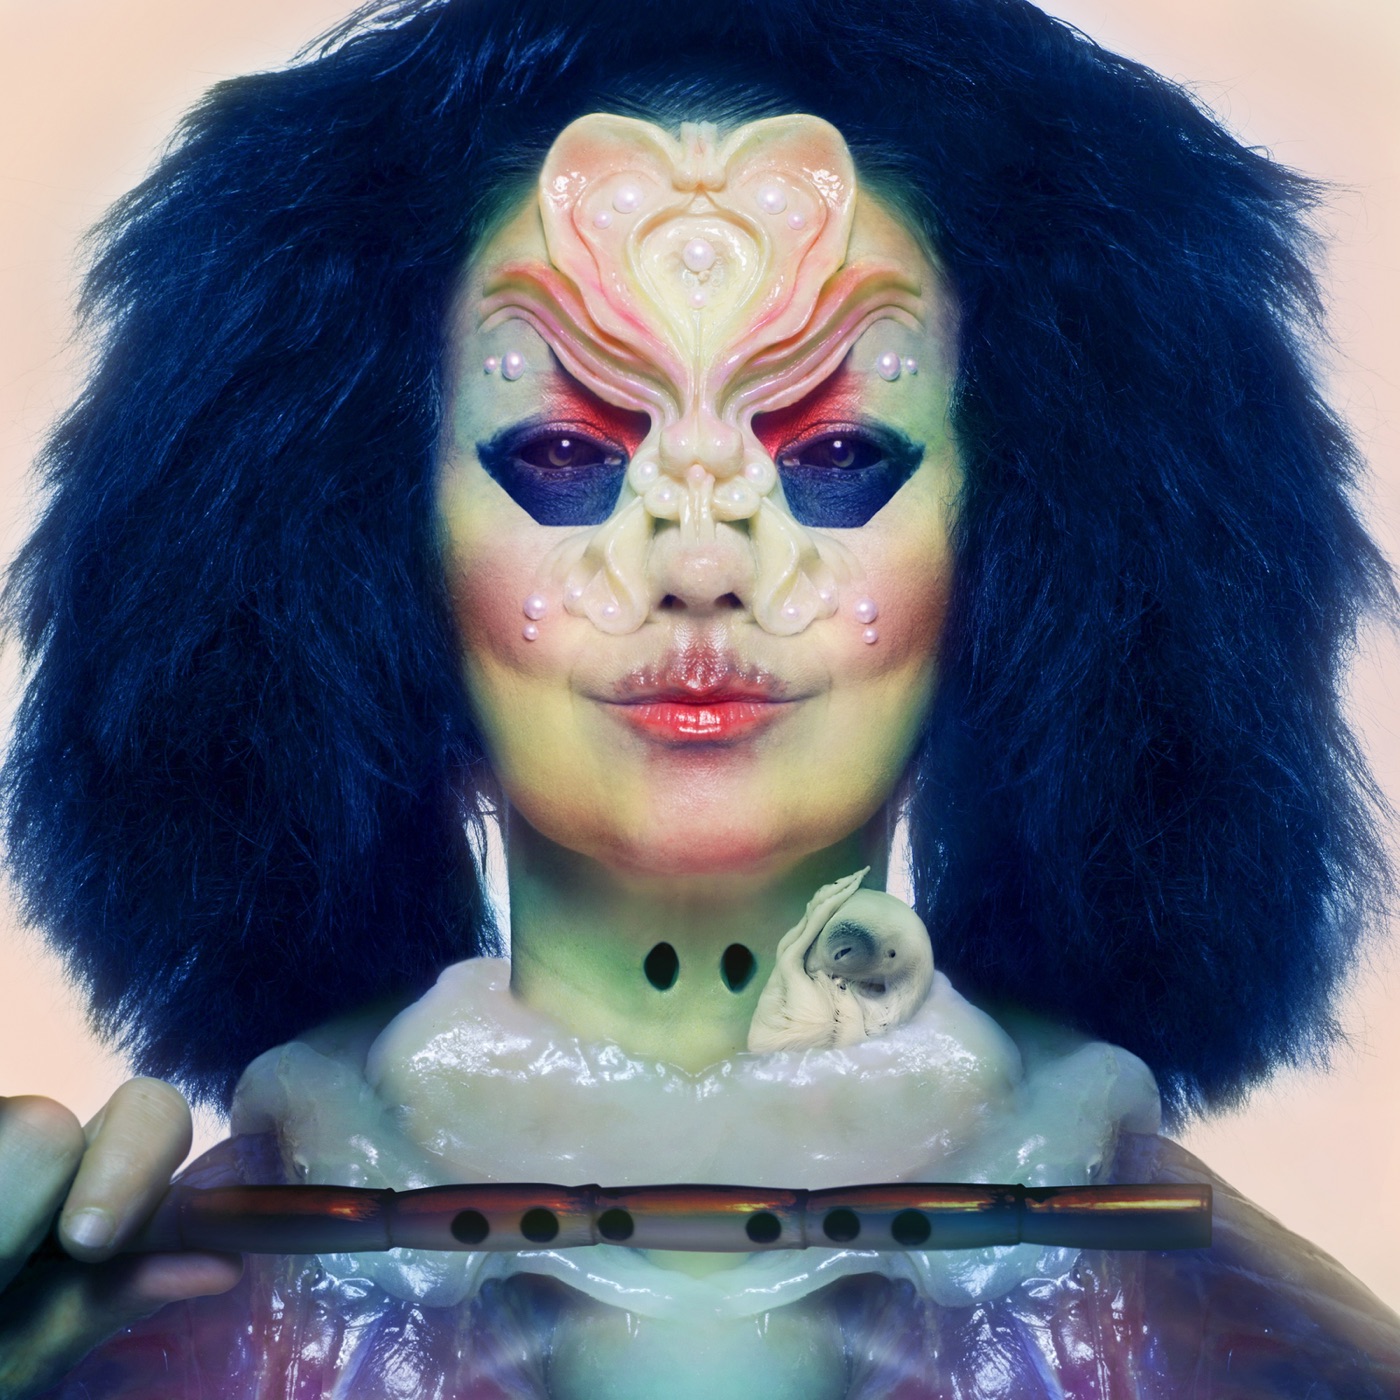 Utopia by Björk